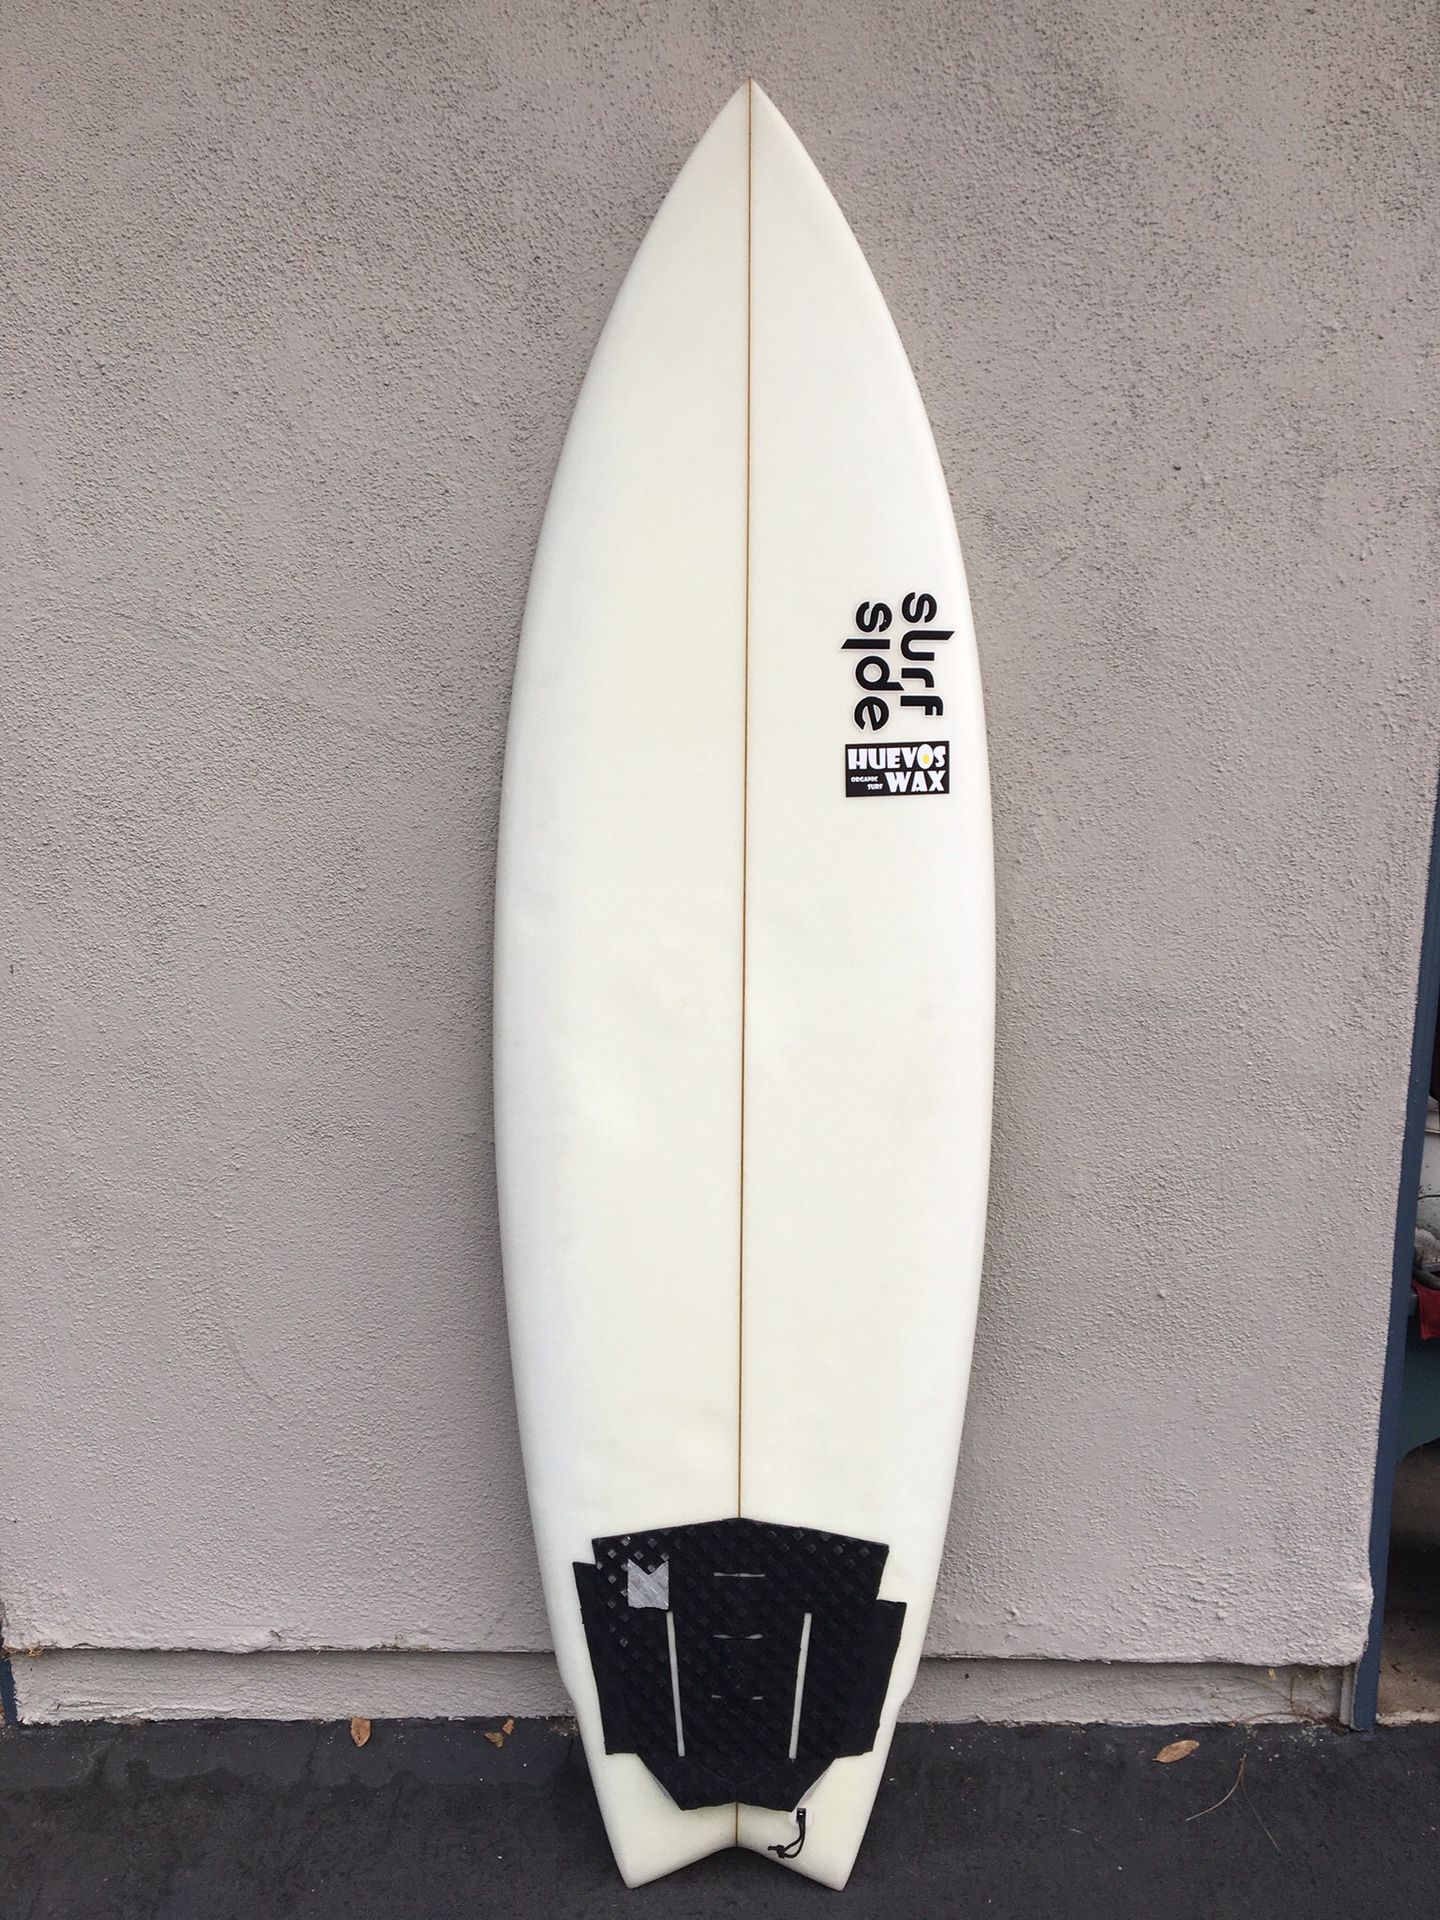 Twin Fin Surfboard - 5’10” x 20” x 2 5/8”